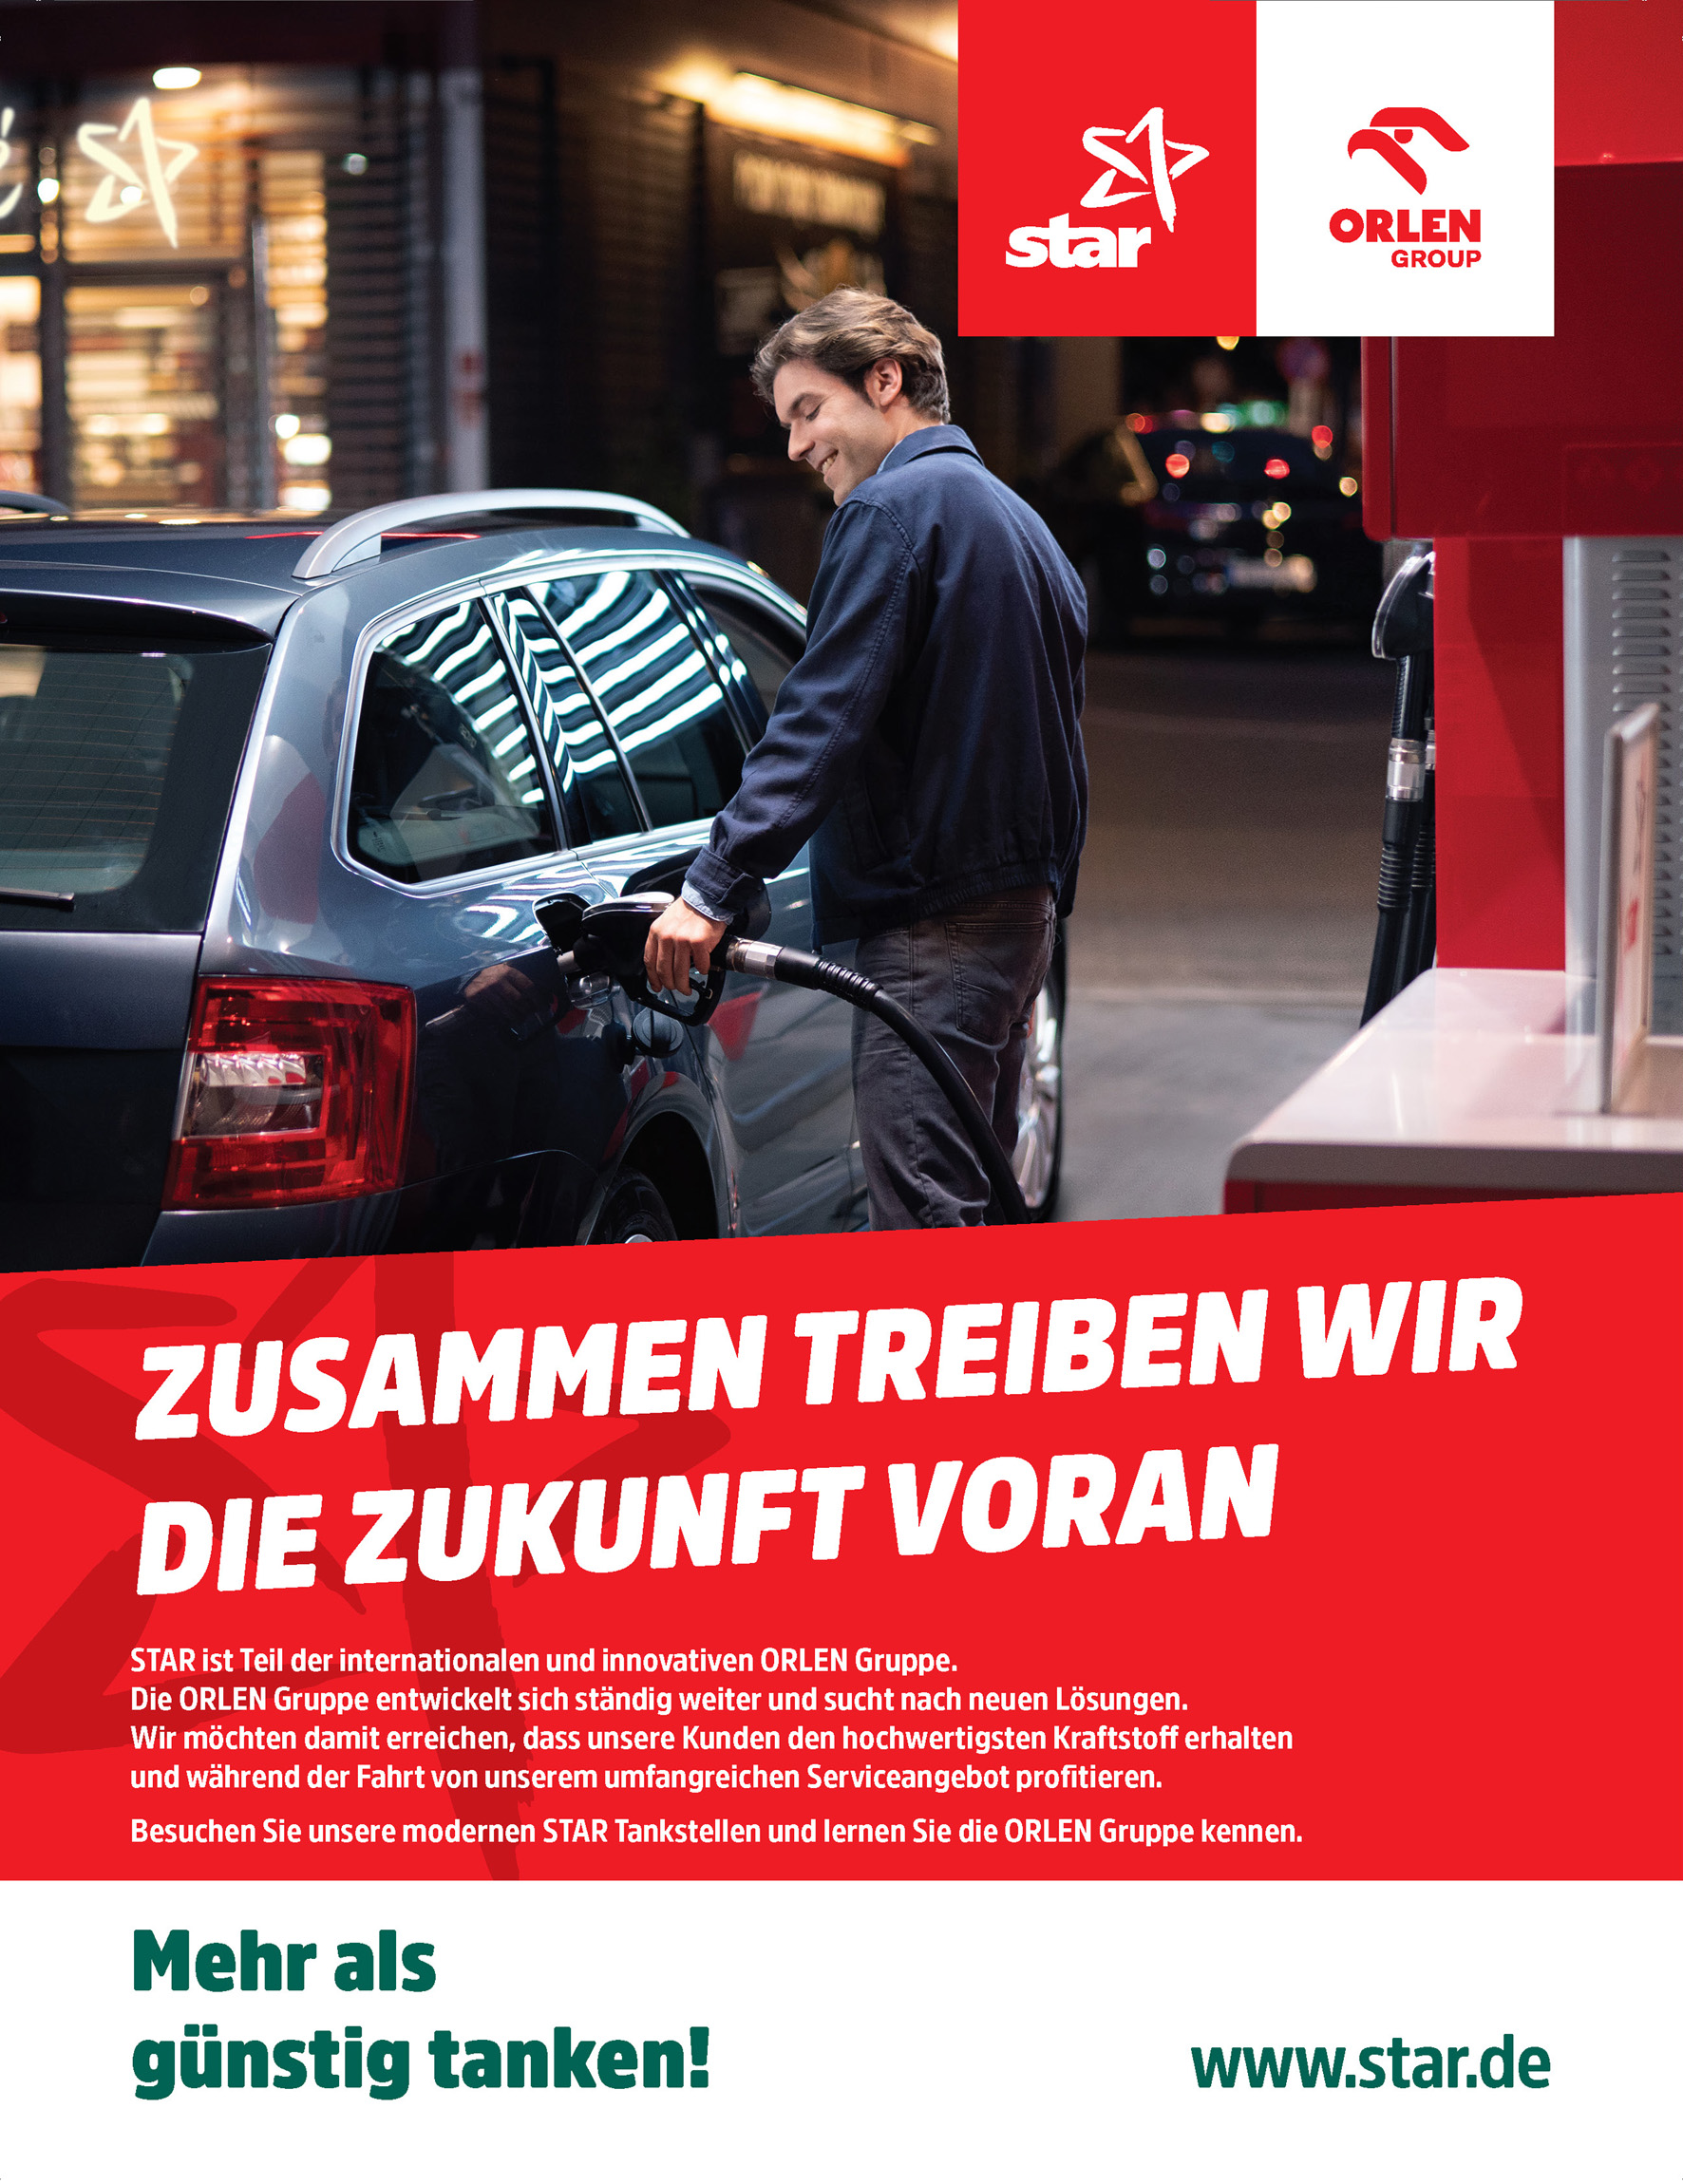 star Tankstellen_Co-Branding PKN ORLEN und star_Kampagnen-Visual © ORLEN Deutschland.jpg